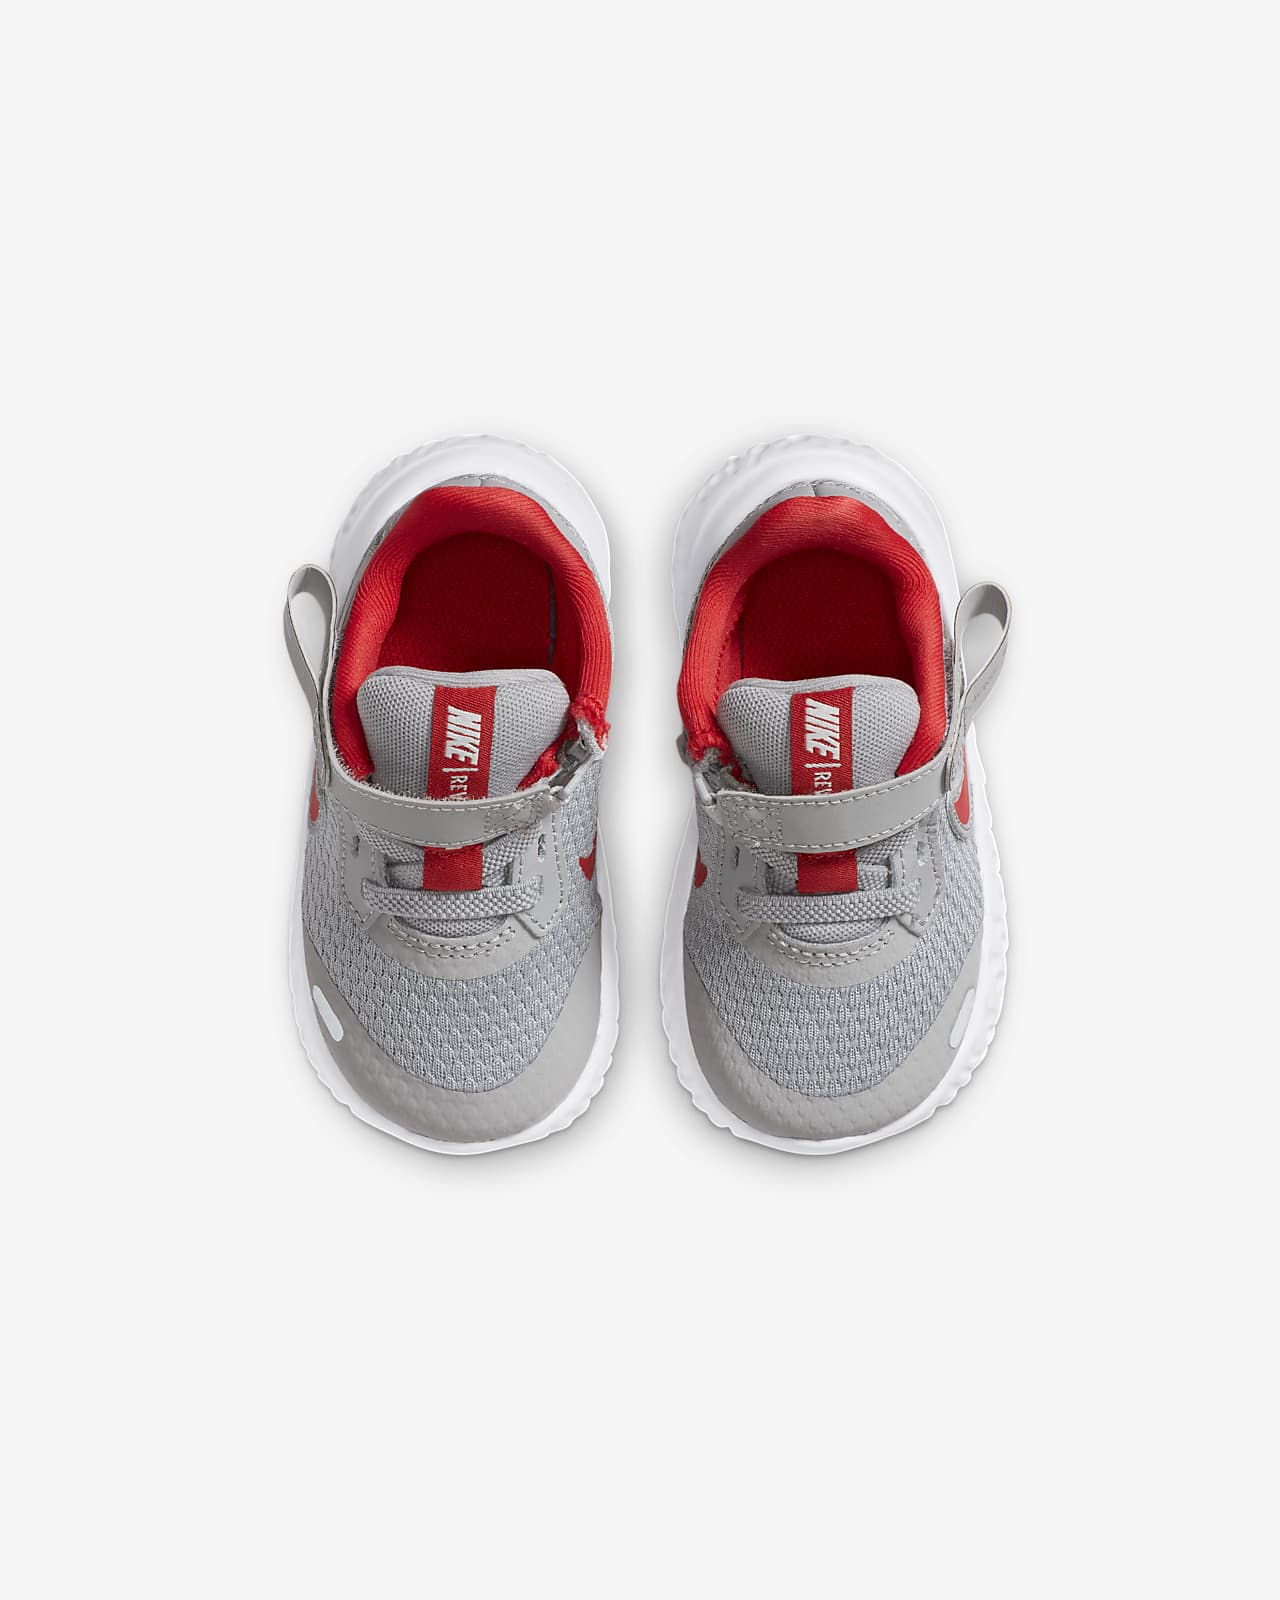 FlyEase Baby/Toddler Shoe. Nike AE